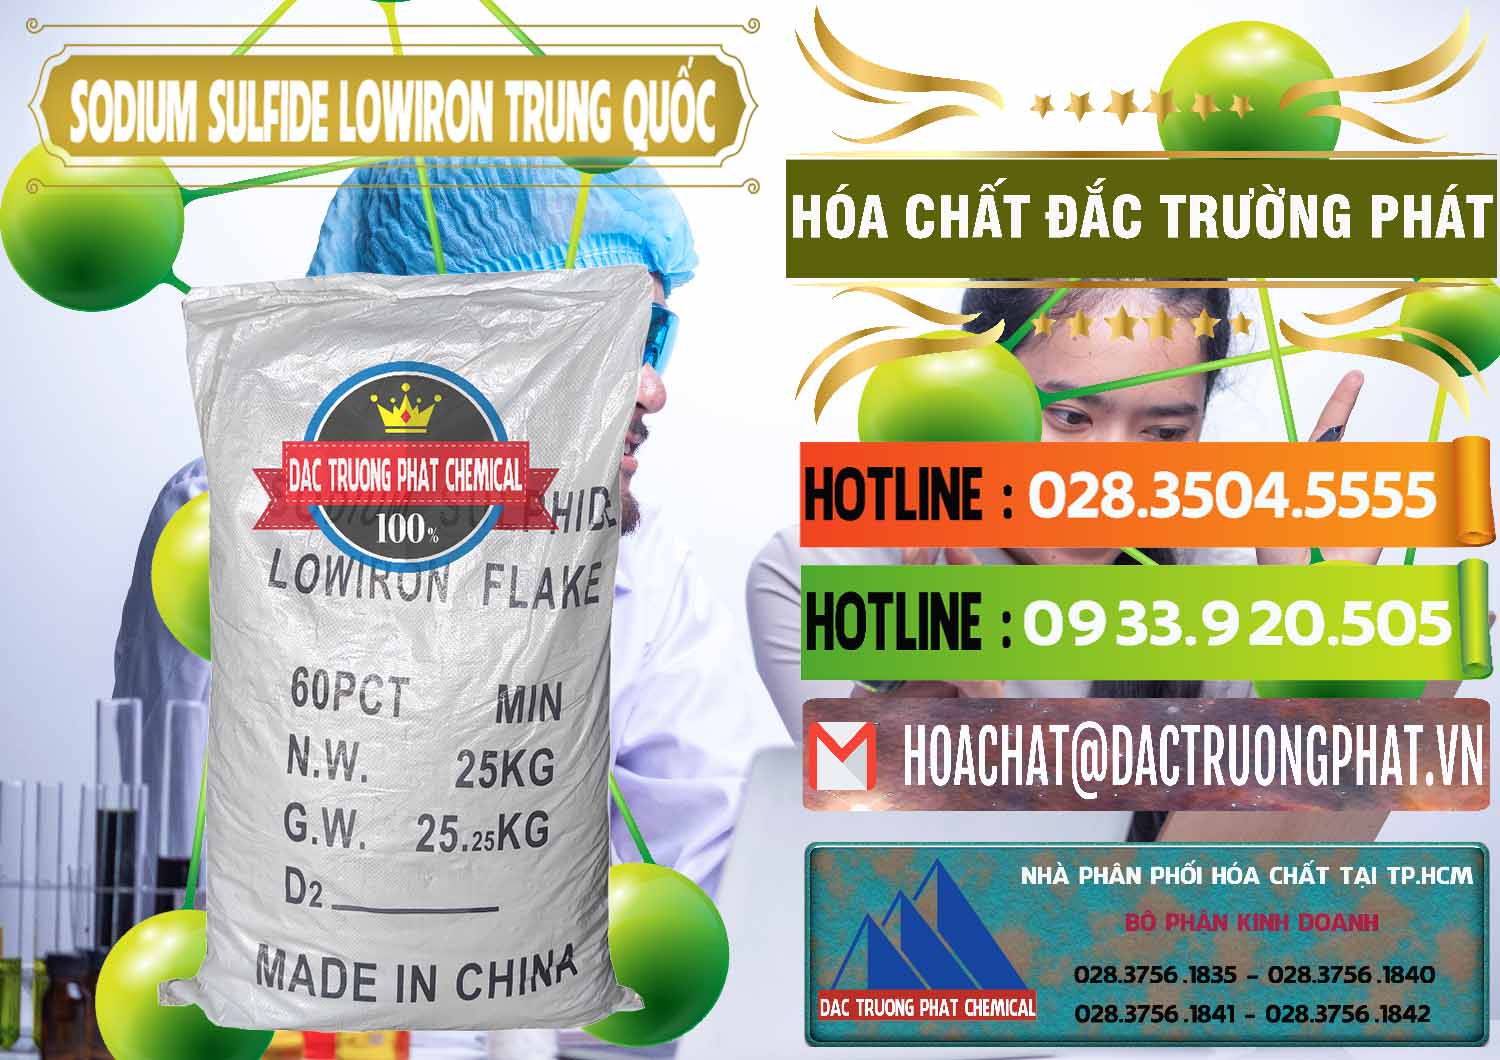 Đơn vị kinh doanh & bán Sodium Sulfide NA2S – Đá Thối Lowiron Trung Quốc China - 0227 - Nhà cung cấp - phân phối hóa chất tại TP.HCM - cungcaphoachat.com.vn